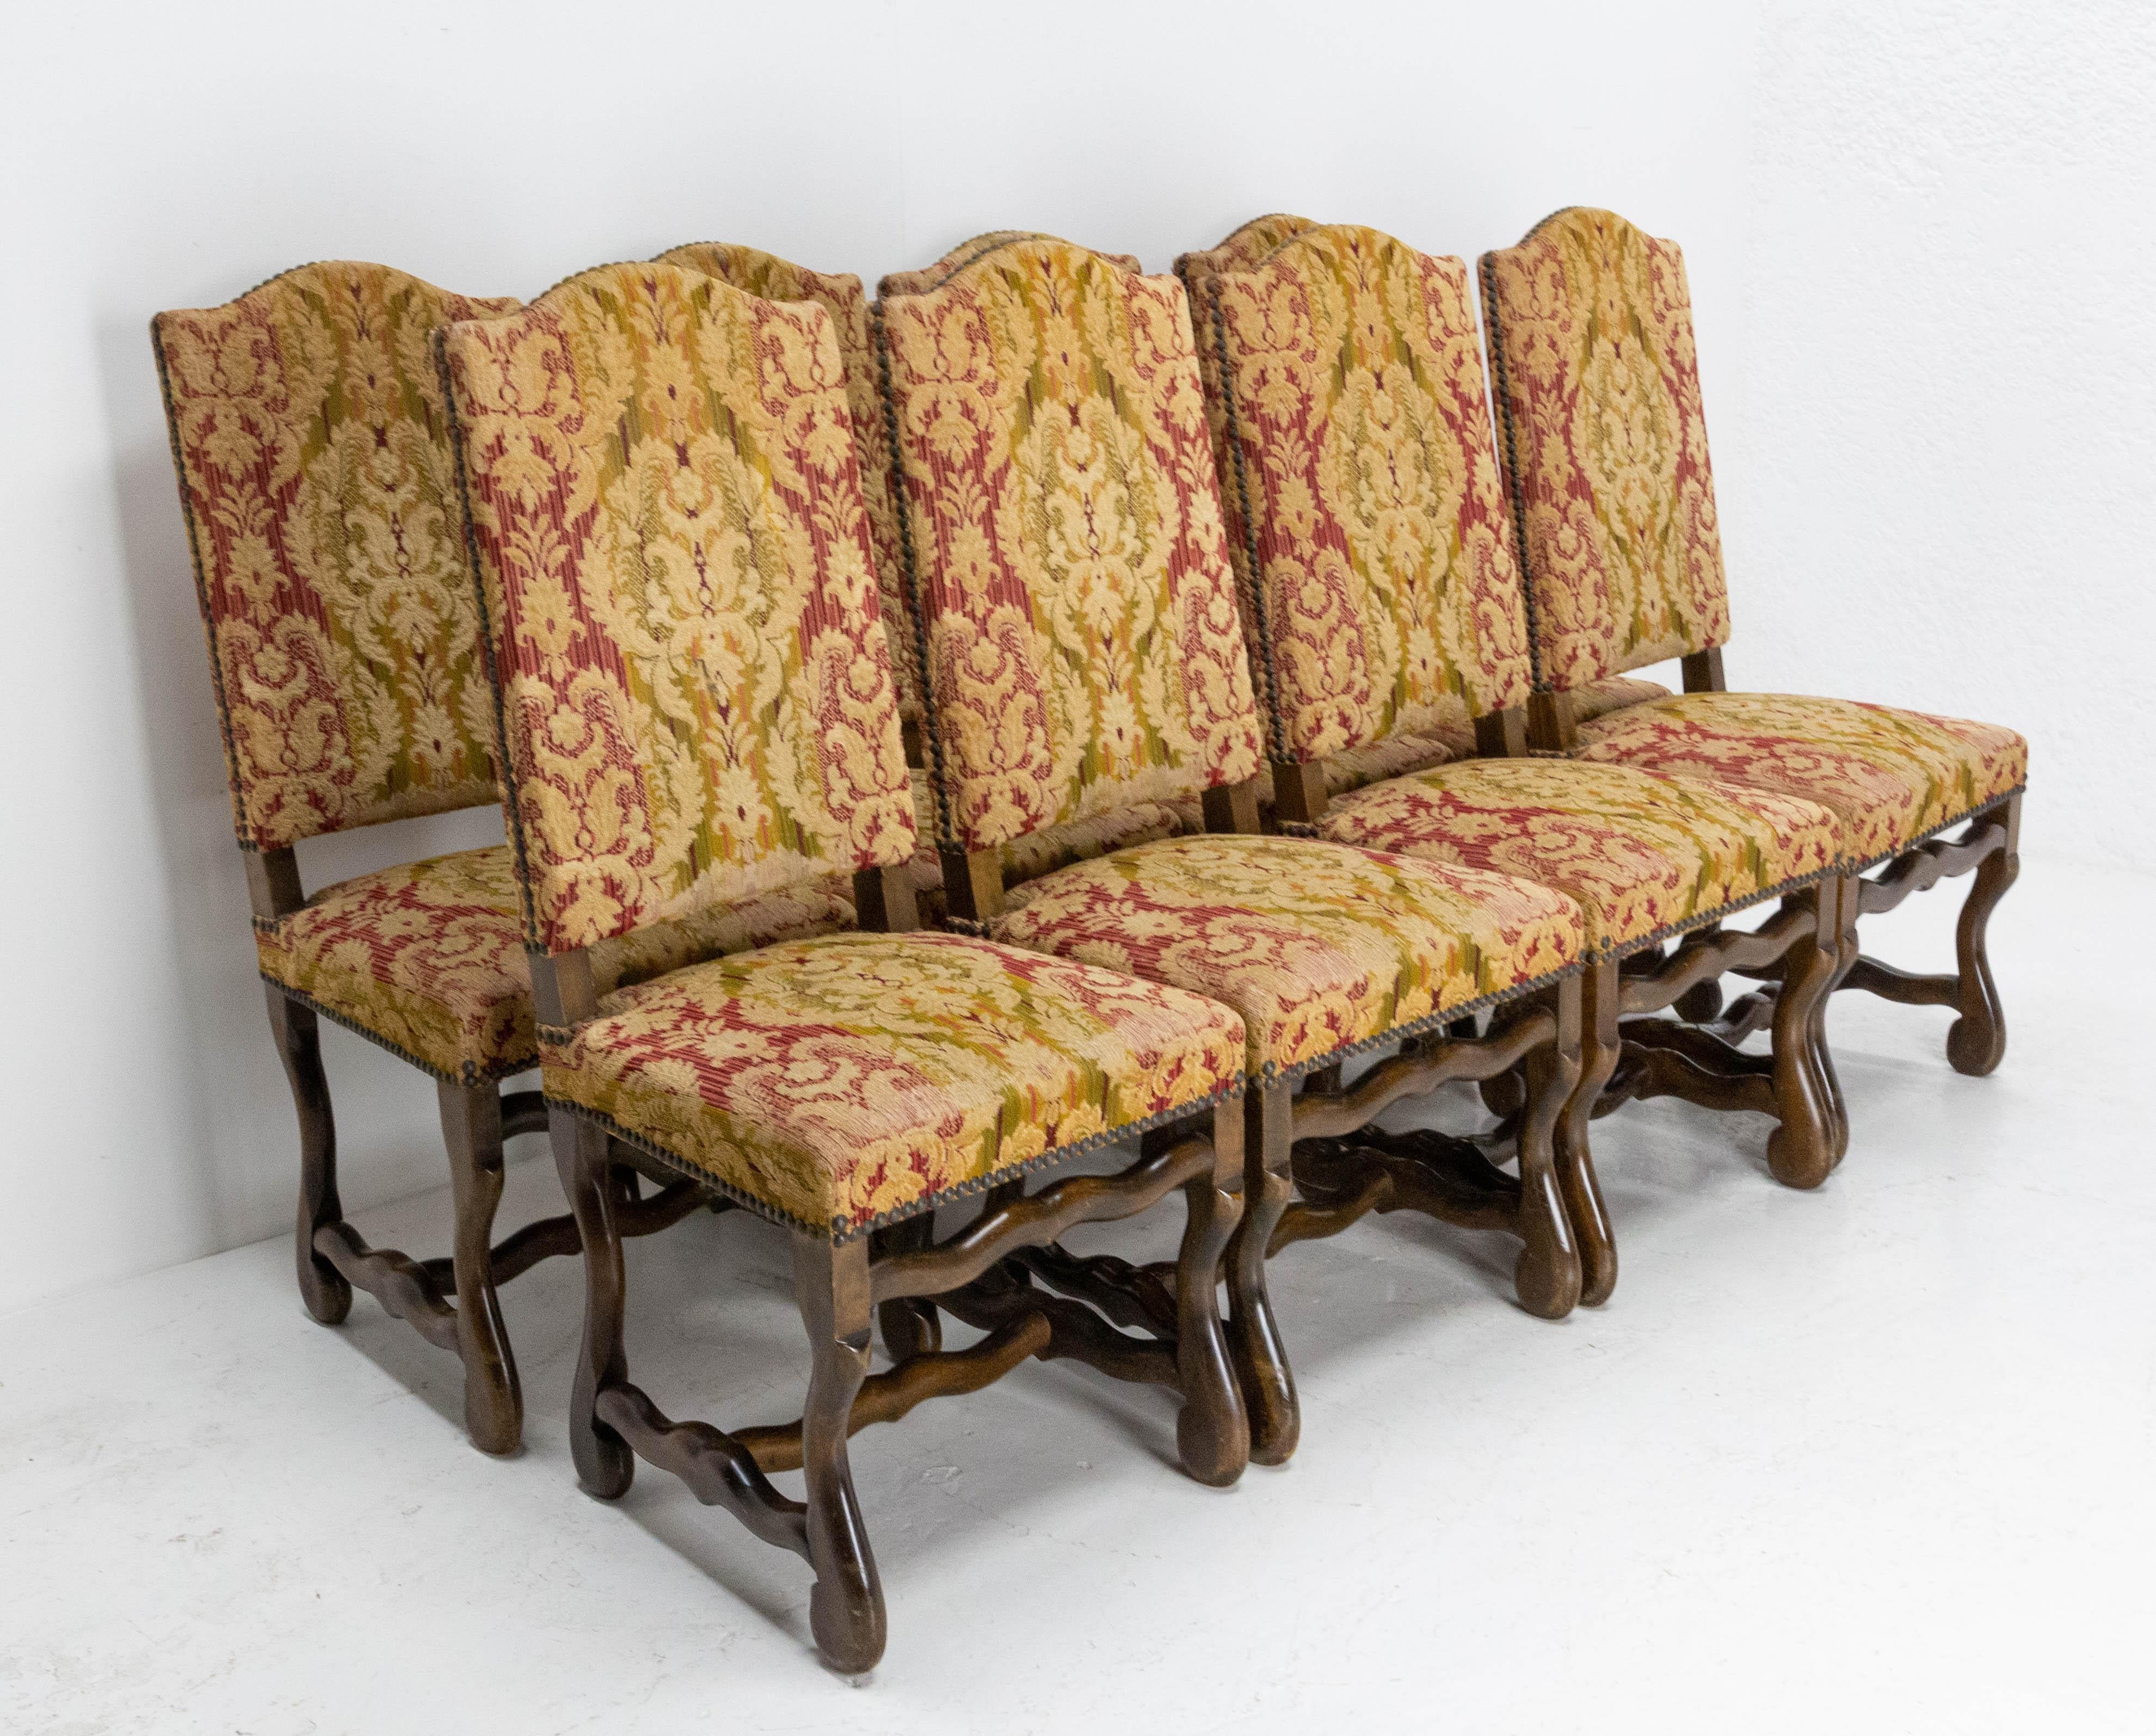 Acht Esszimmerstühle im Stil Louis XIII um 1960
Diese Stühle stammen aus einem Restaurant an der französischen Baskenküste (Südwestfrankreich)
Wir haben auch zwei Sätze von sechs Stühlen, wenn Sie benötigen, fragen Sie bitte einfach.
Der Stuhl kann